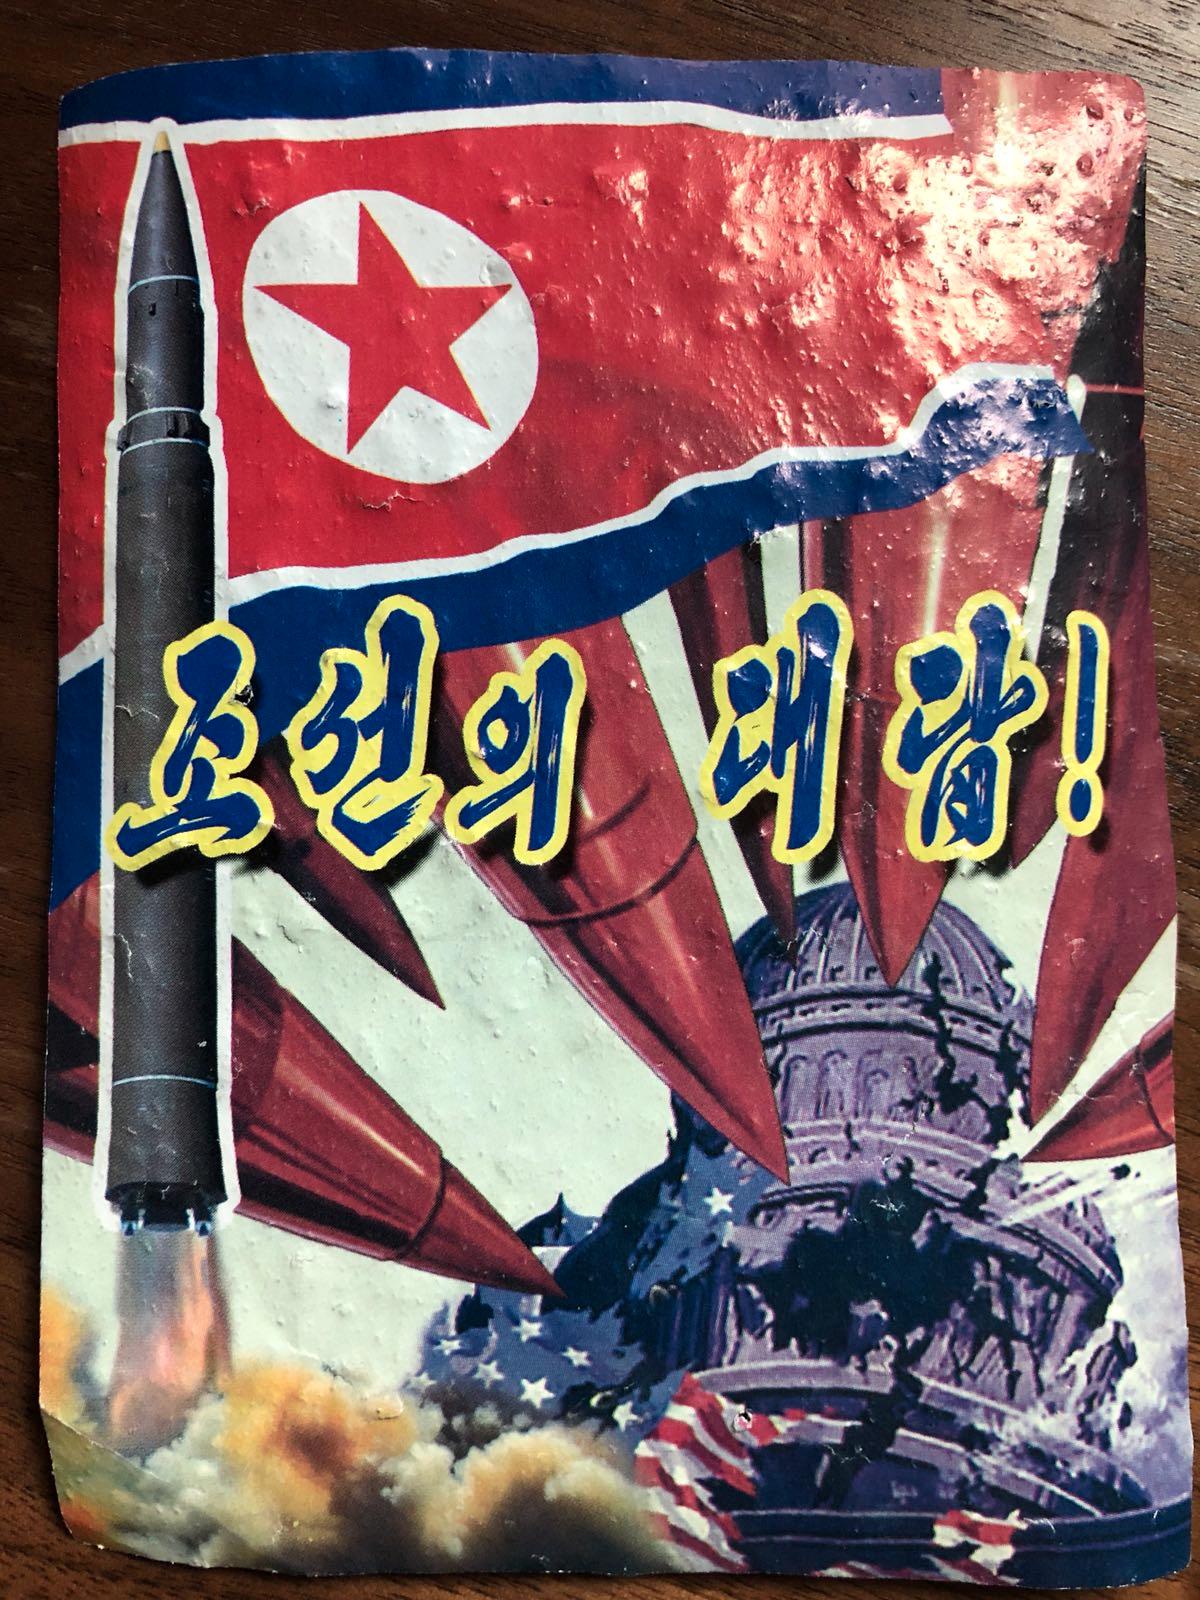 Nordkoreansk propagandaaffisch som lyder: ”Det här är vårt svar”. 